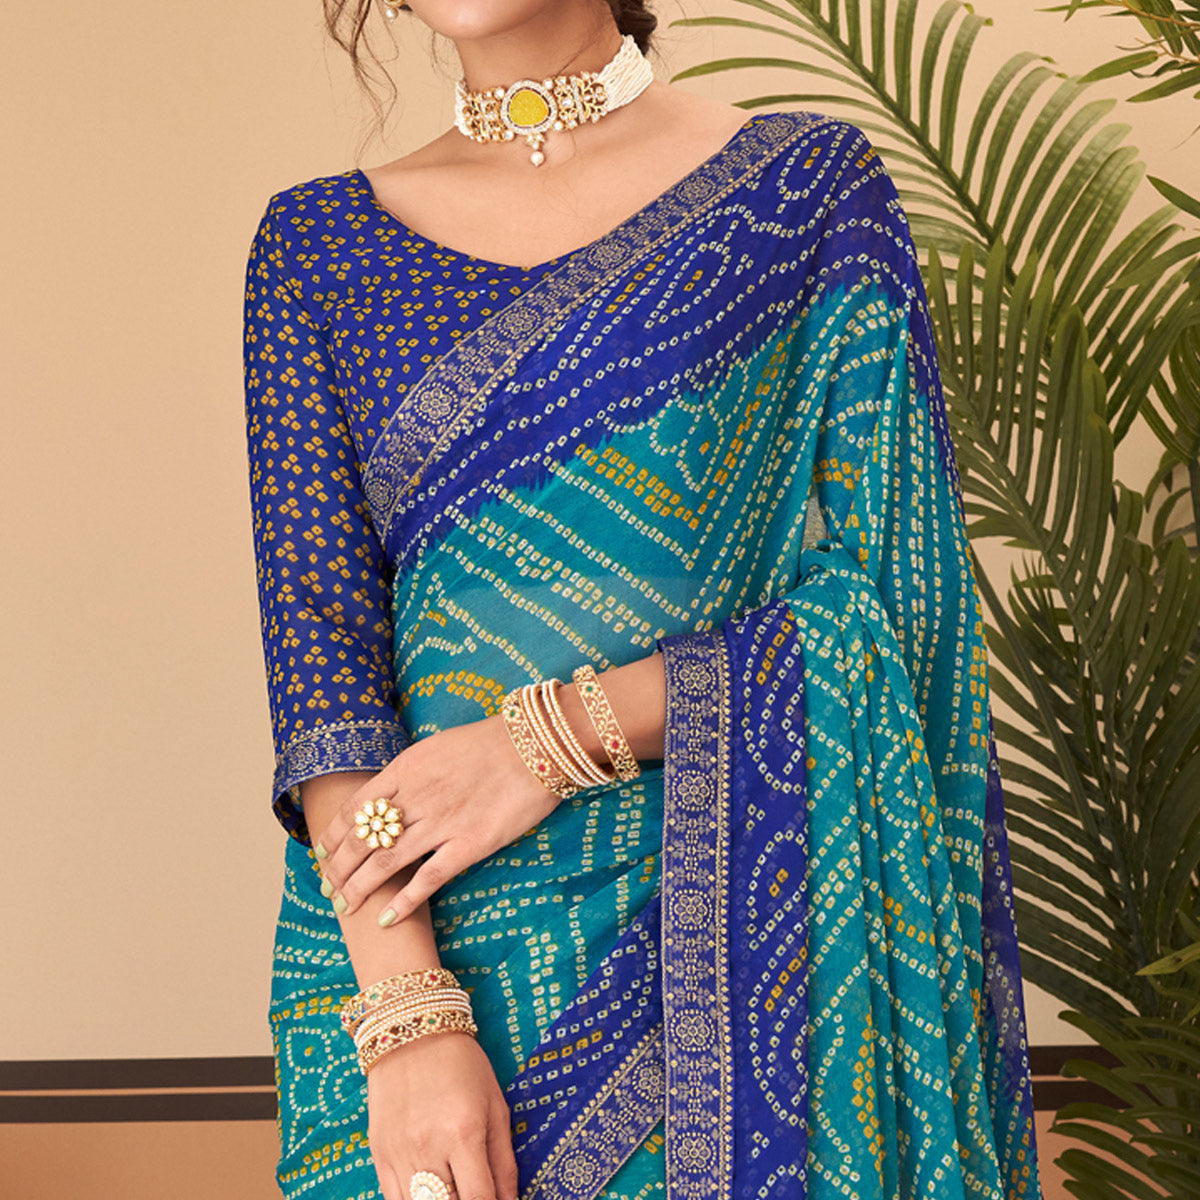 Teal & Blue Bandhani Printed Chiffon Saree With Lace Border